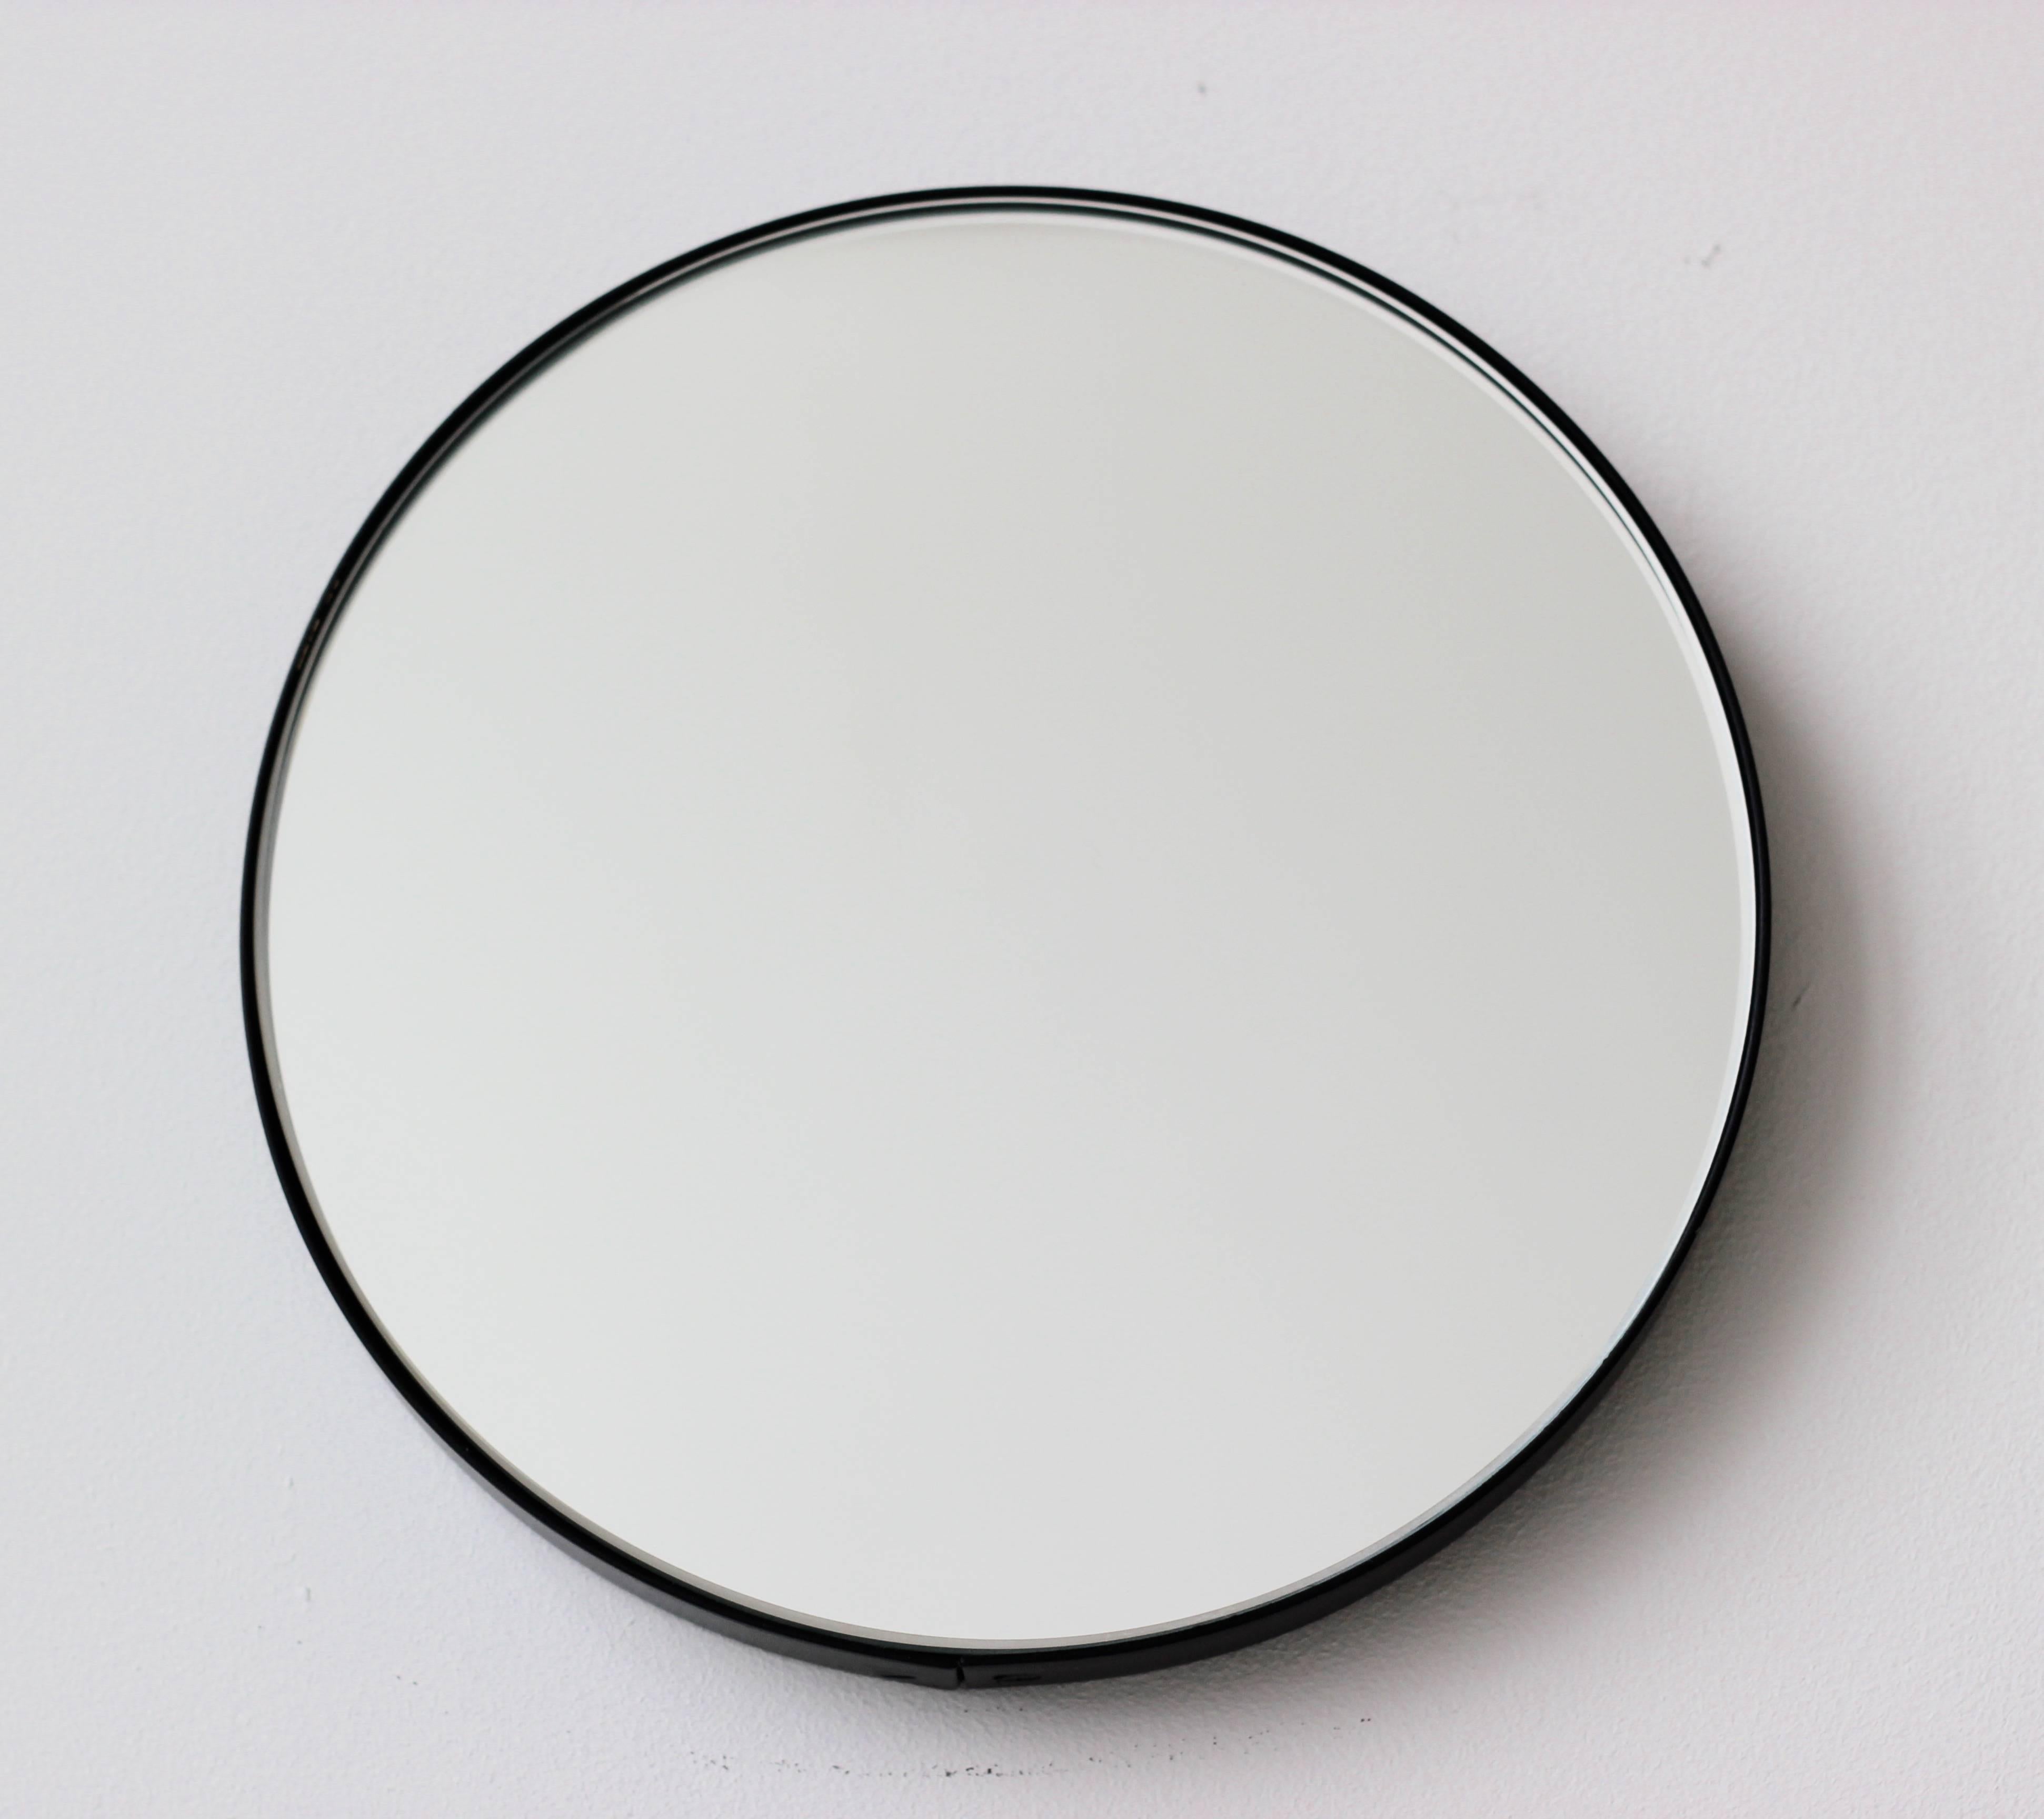 Miroir rond minimaliste Orbis™ doté d'un élégant cadre en aluminium peint par poudrage en noir. Conçu et fabriqué à la main à Londres, au Royaume-Uni.

Les miroirs de taille moyenne, grande et extra-large (60, 80 et 100 cm) sont équipés d'un